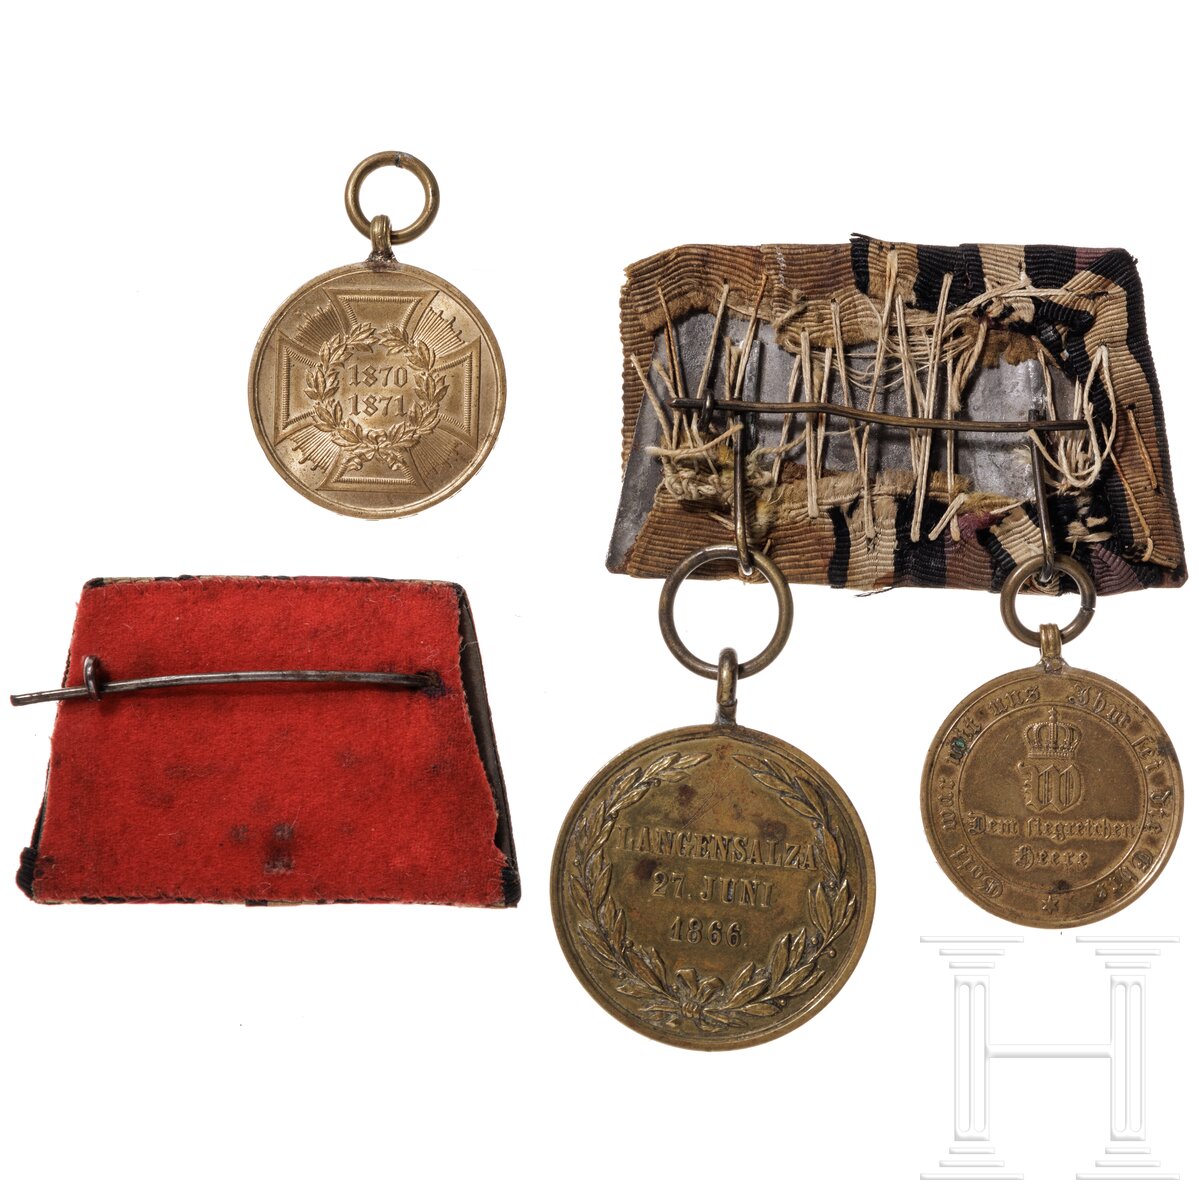 Auszeichnungen eines Teilnehmers der Kriege 1866 und 1870/71 - Image 2 of 2